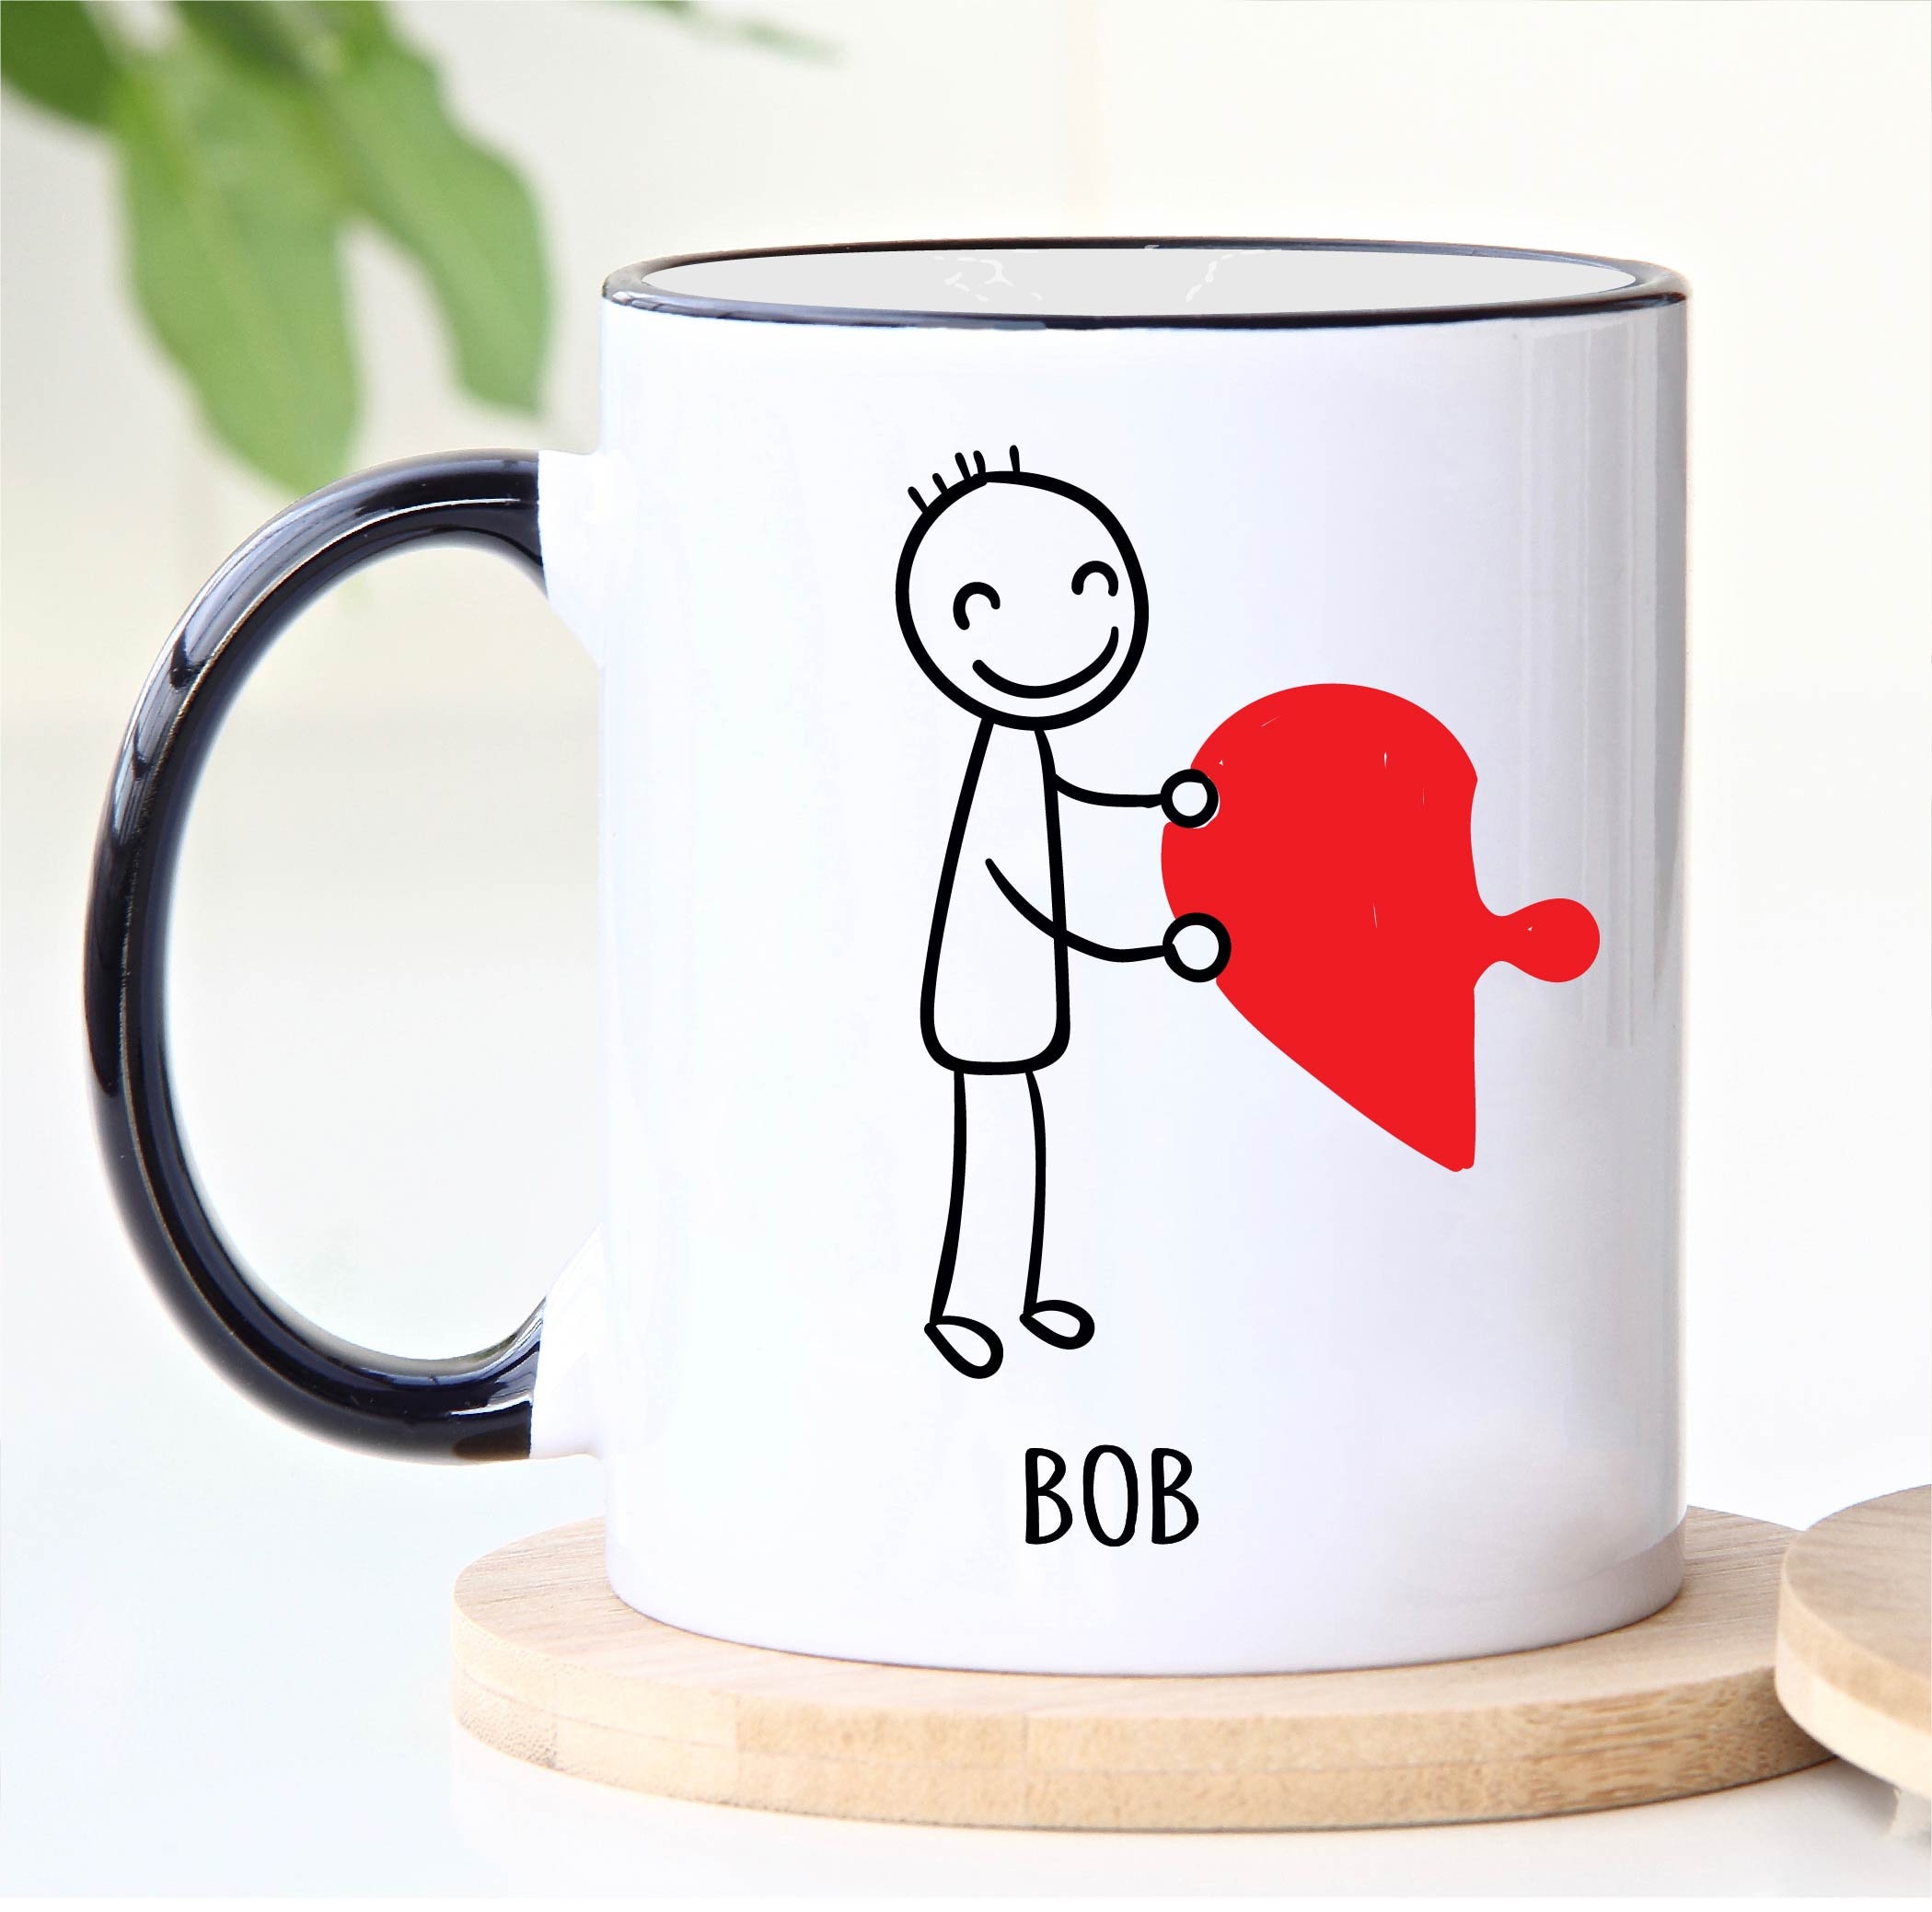 Inexpensive Mug Gift Ideas (Easy & Fun ) - Savvy Saving Couple